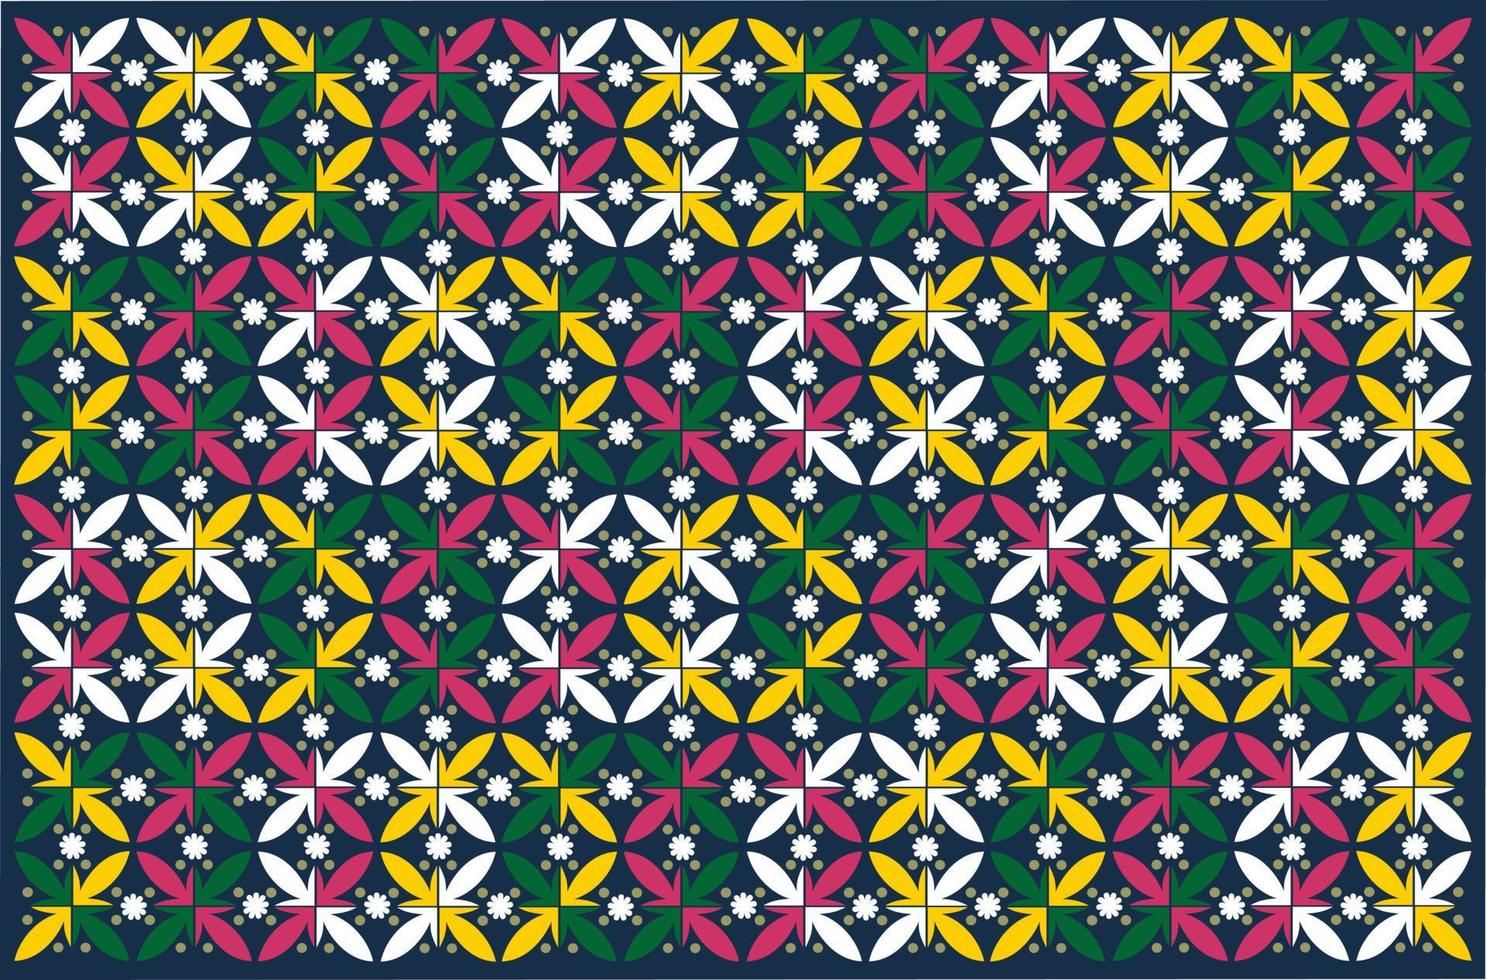 padrão de batik de design gráfico de vetor da Indonésia com motivos florais. designs para impressão em tecidos, capas e necessidades gráficas. modelos modernos.